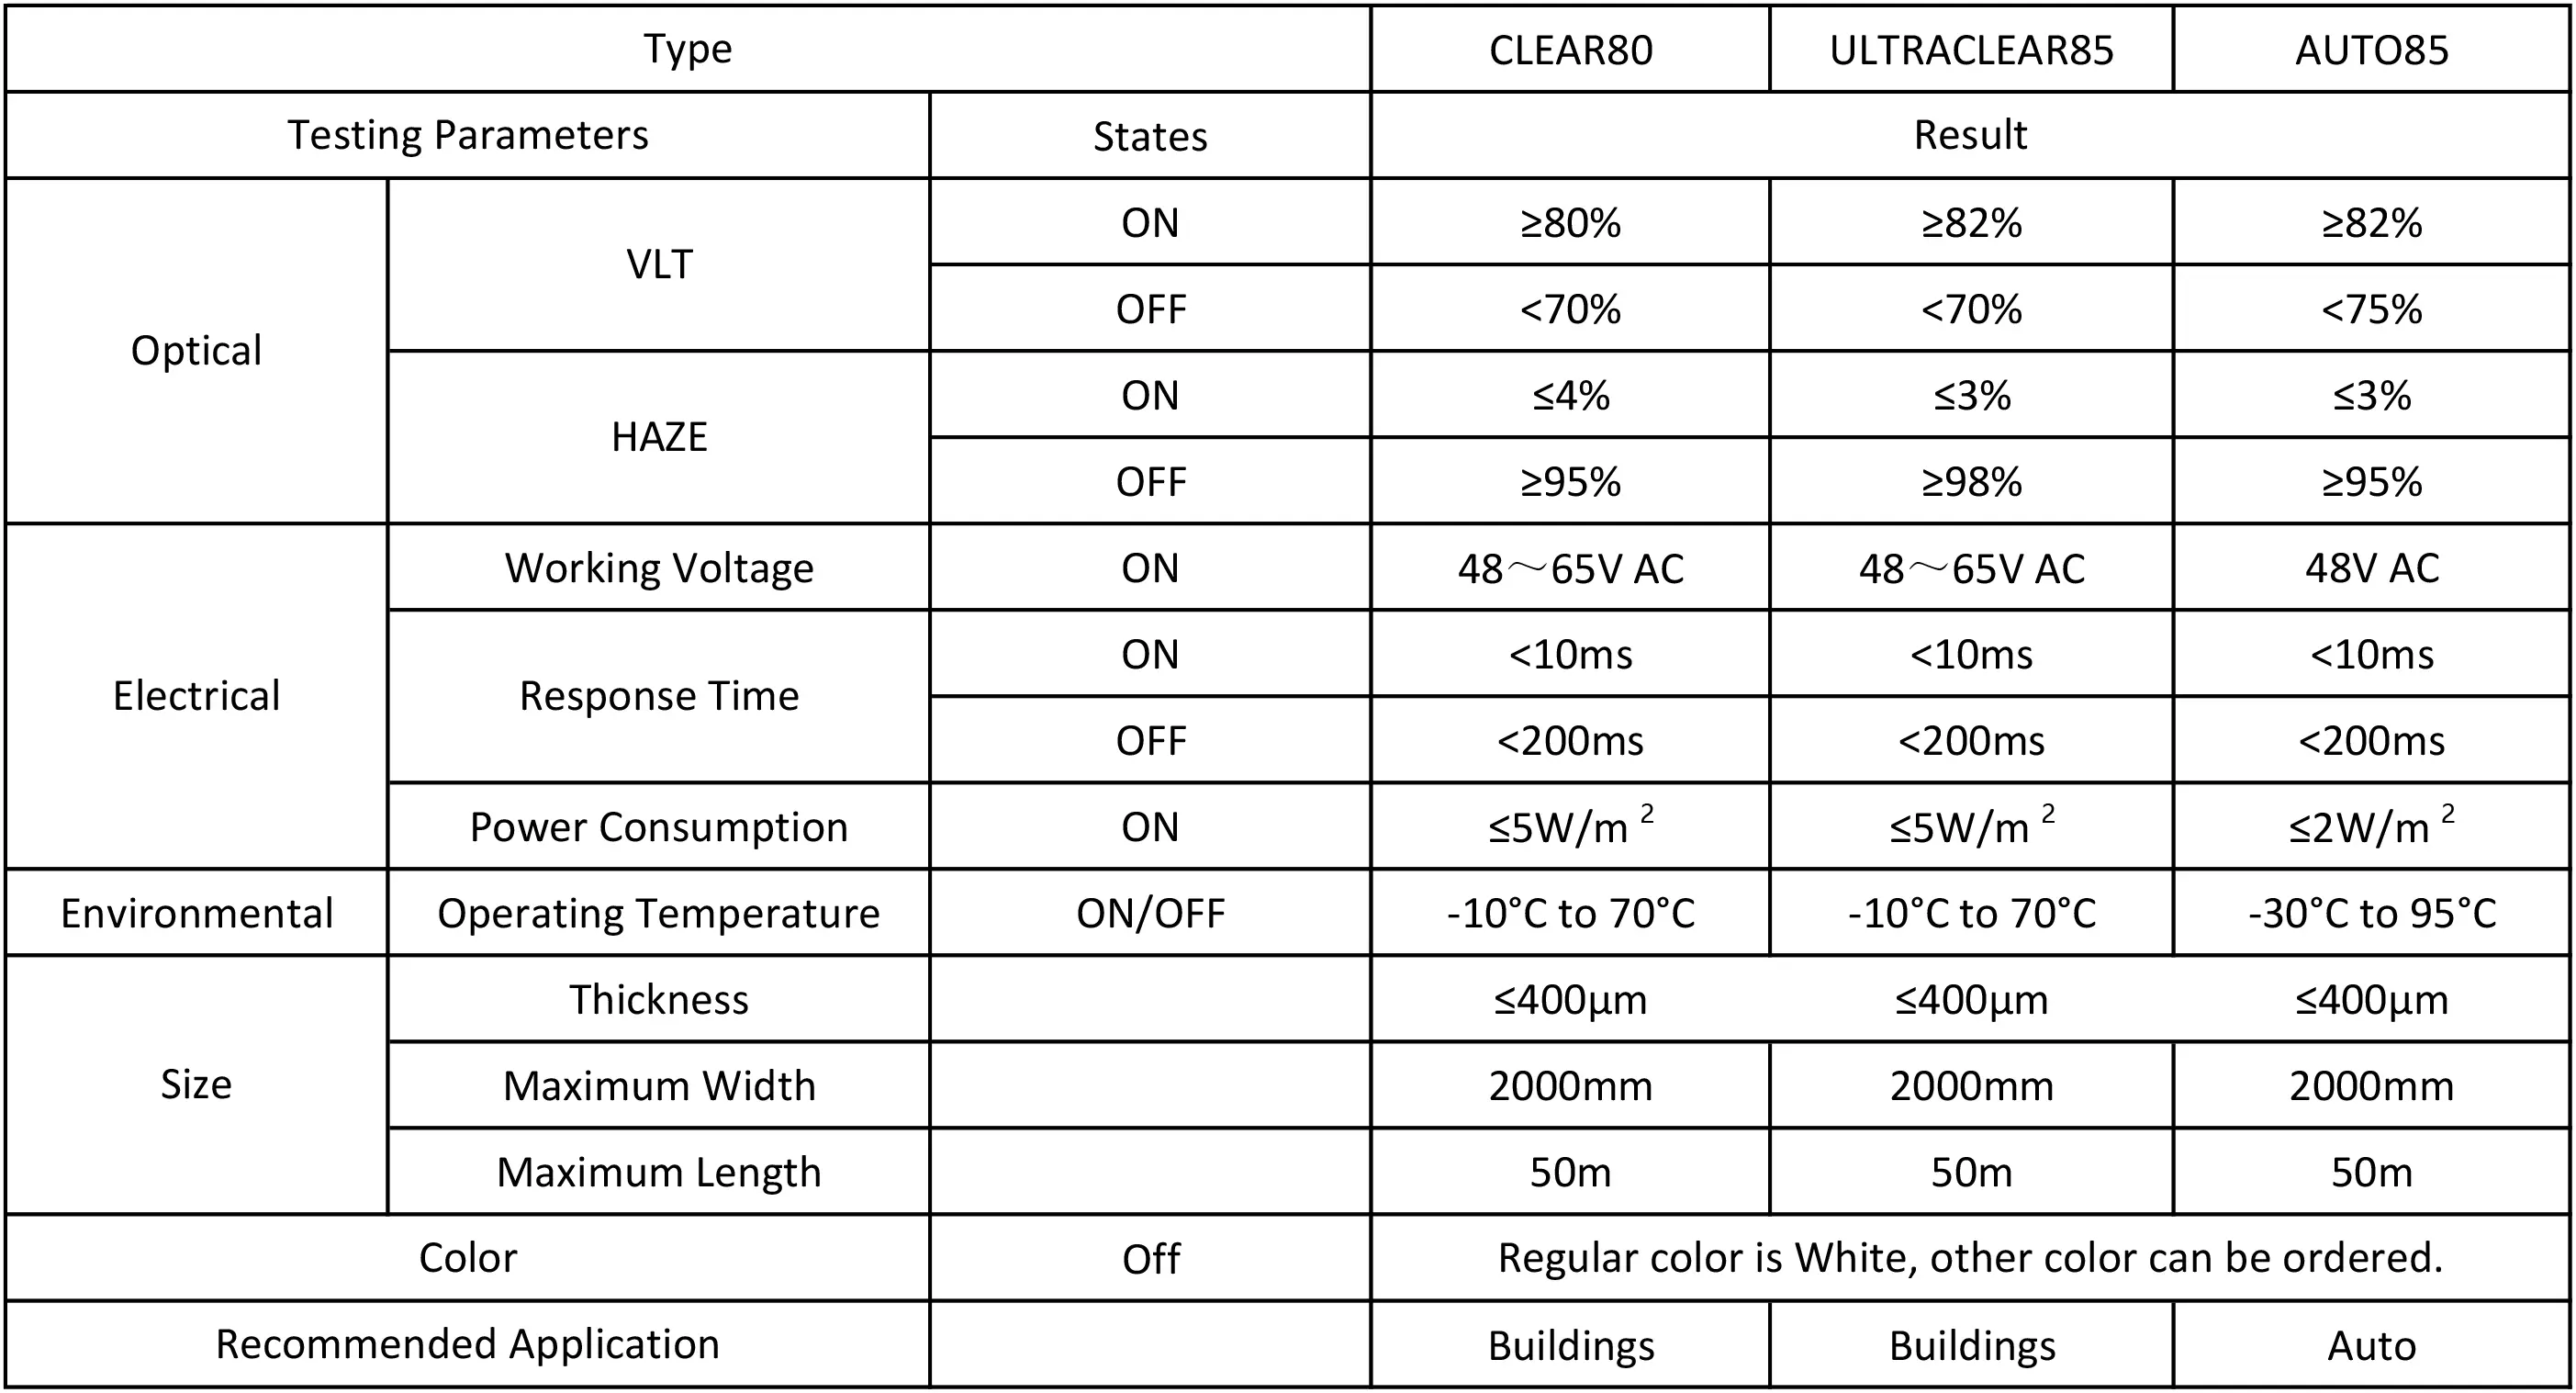 بصري VLT-ON≥80٪ VLT-OFF <70٪ HAZE-ON ≤4٪ HAZE-OFF 95٪ جهد العمل-ON 65VAC زمن الاستجابة <10ms استهلاك الطاقة-تشغيل 5 واط / م 2 درجة حرارة التشغيل ON / OFF -10 ° درجة مئوية إلى 70 درجة مئوية سمك 400 ميكرومتر أقصى عرض: 2000 مم أقصى طول: 50 م